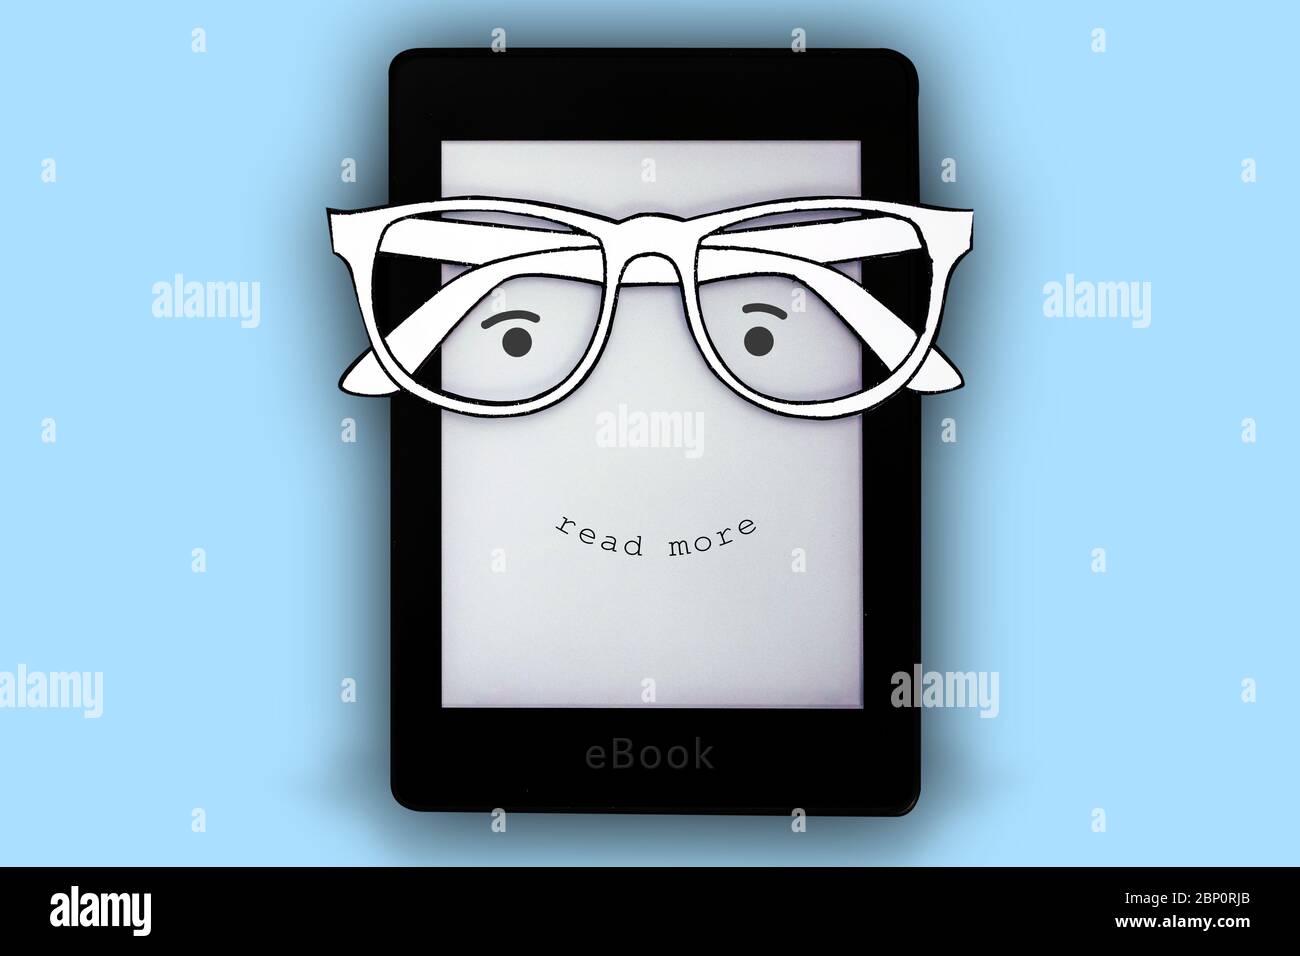 Un livre électronique noir avec des lunettes en papier et un visage heureux où il est écrit « en savoir plus » sur un fond bleu Banque D'Images